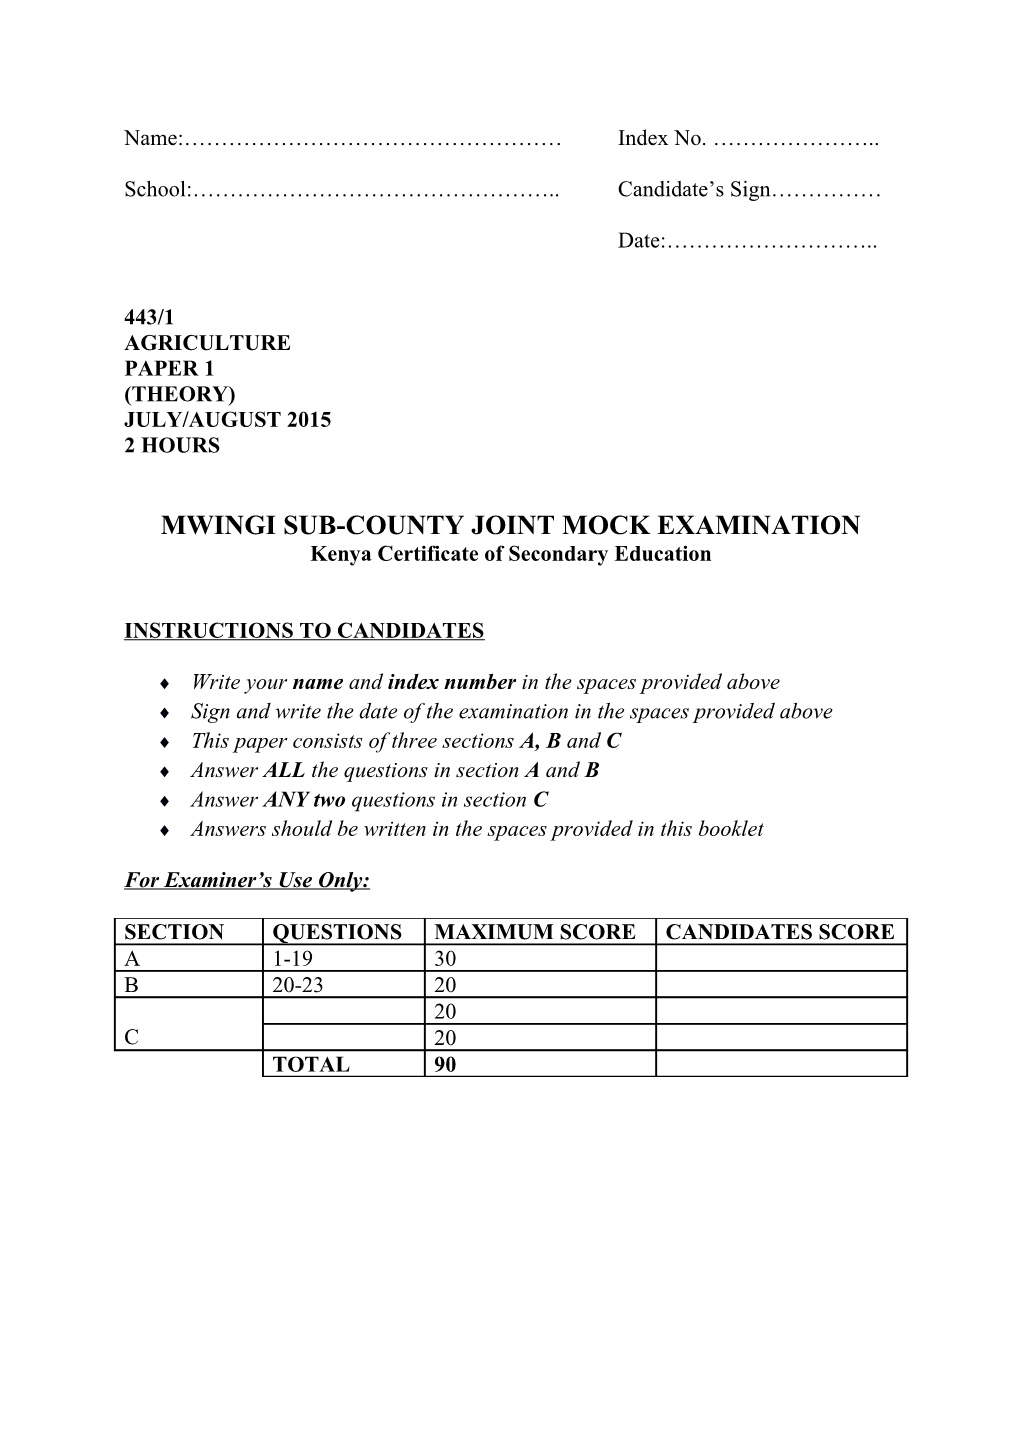 Mwingi Sub-County Joint Mock Examination